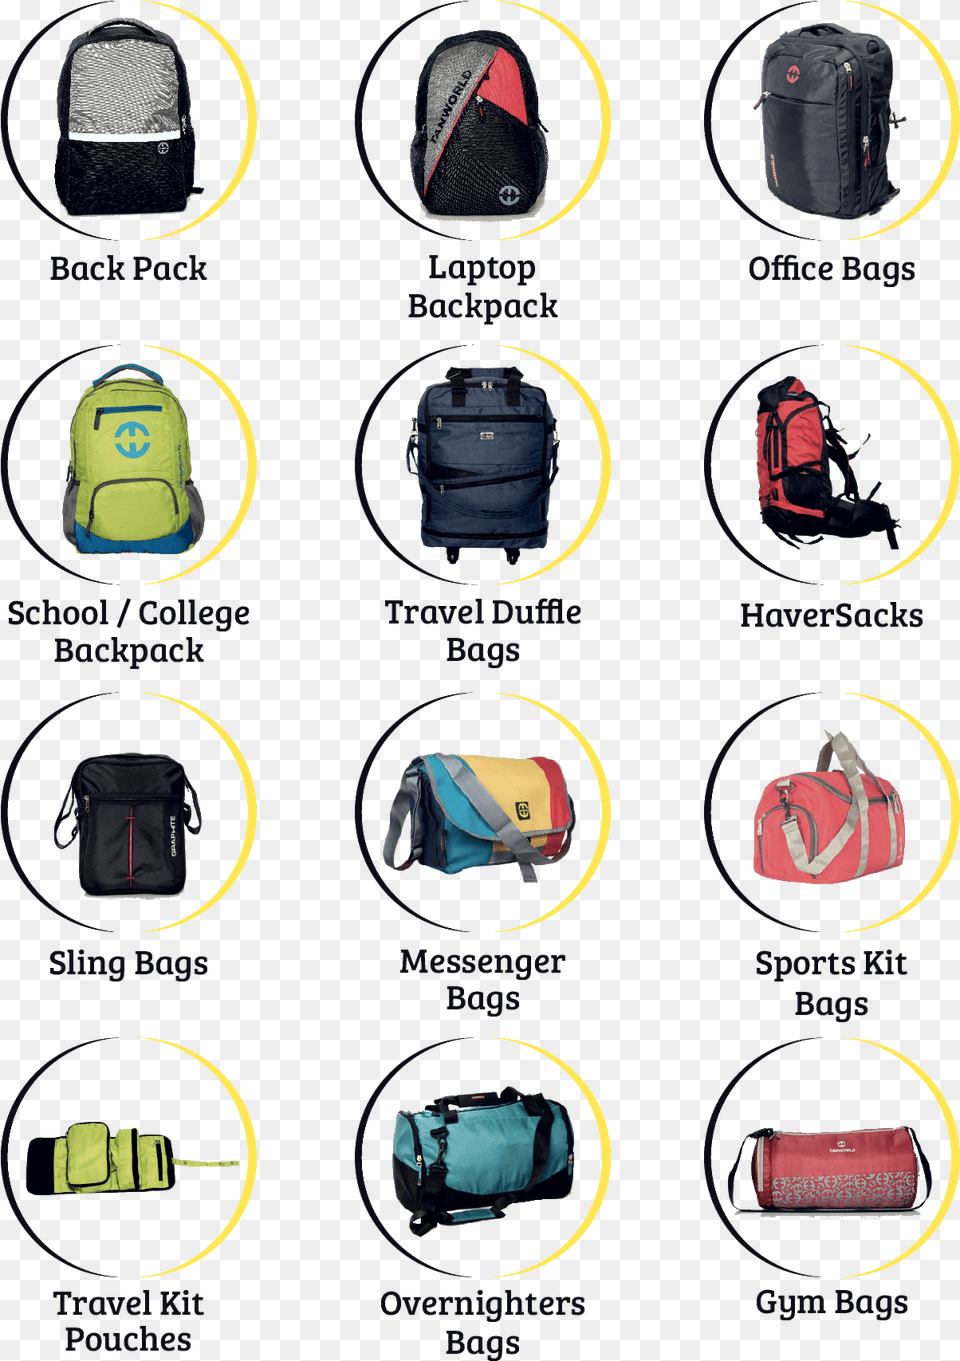 Laptop Bag, Backpack, Accessories, Handbag Free Transparent Png